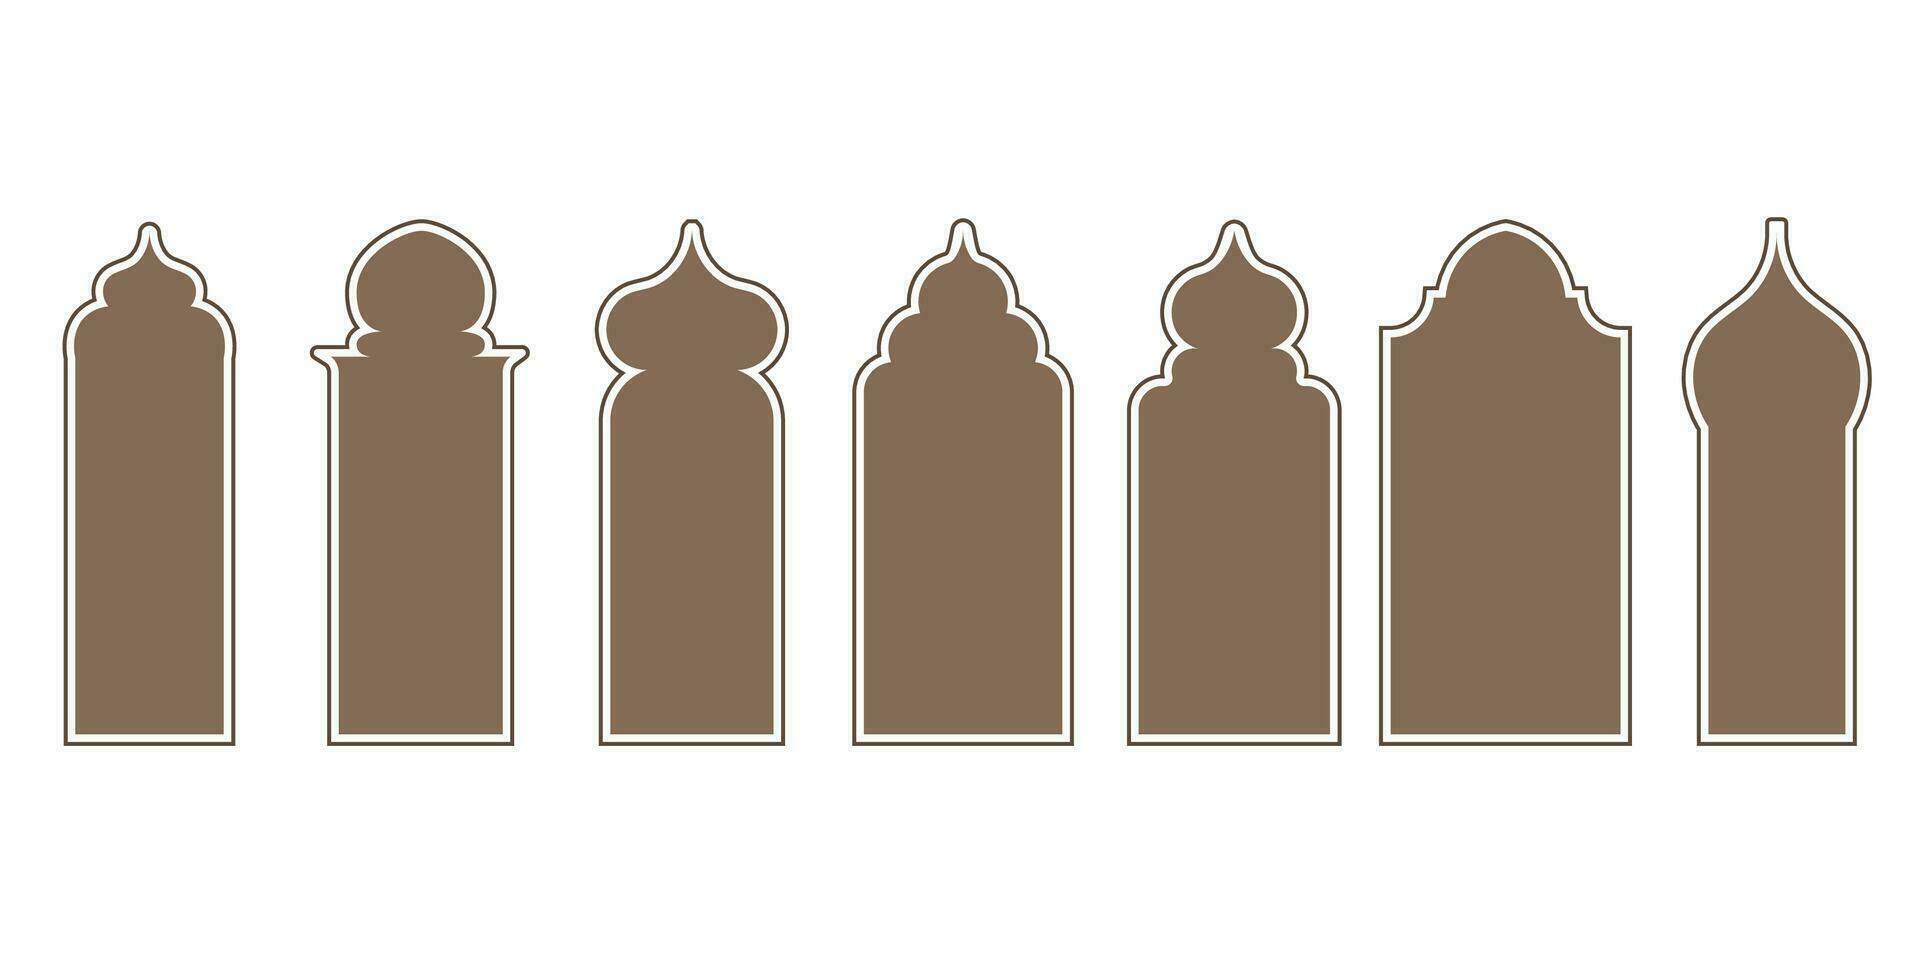 samling av arab orientalisk fönster, valv och dörrar. modern design för ramar, mönster, bakgrunder. moské kupol och lyktor islamic ramadan kareem och eid mubarak stil. vektor illustration